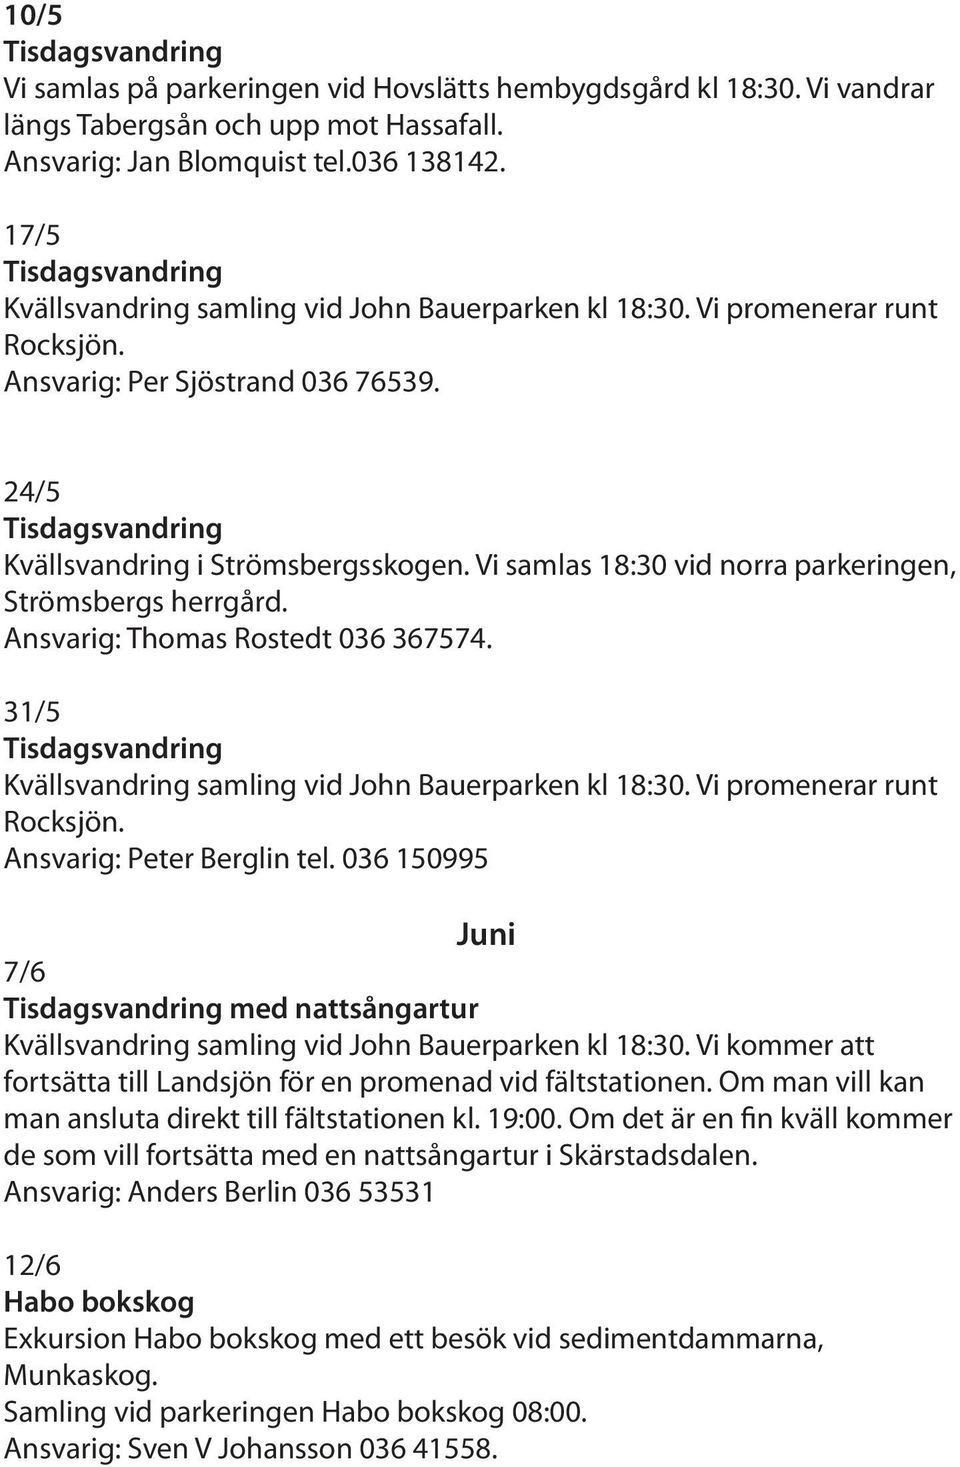 Vi samlas 18:30 vid norra parkeringen, Strömsbergs herrgård. Ansvarig: Thomas Rostedt 036 367574. 31/5 Kvällsvandring samling vid John Bauerparken kl 18:30. Vi promenerar runt Rocksjön.